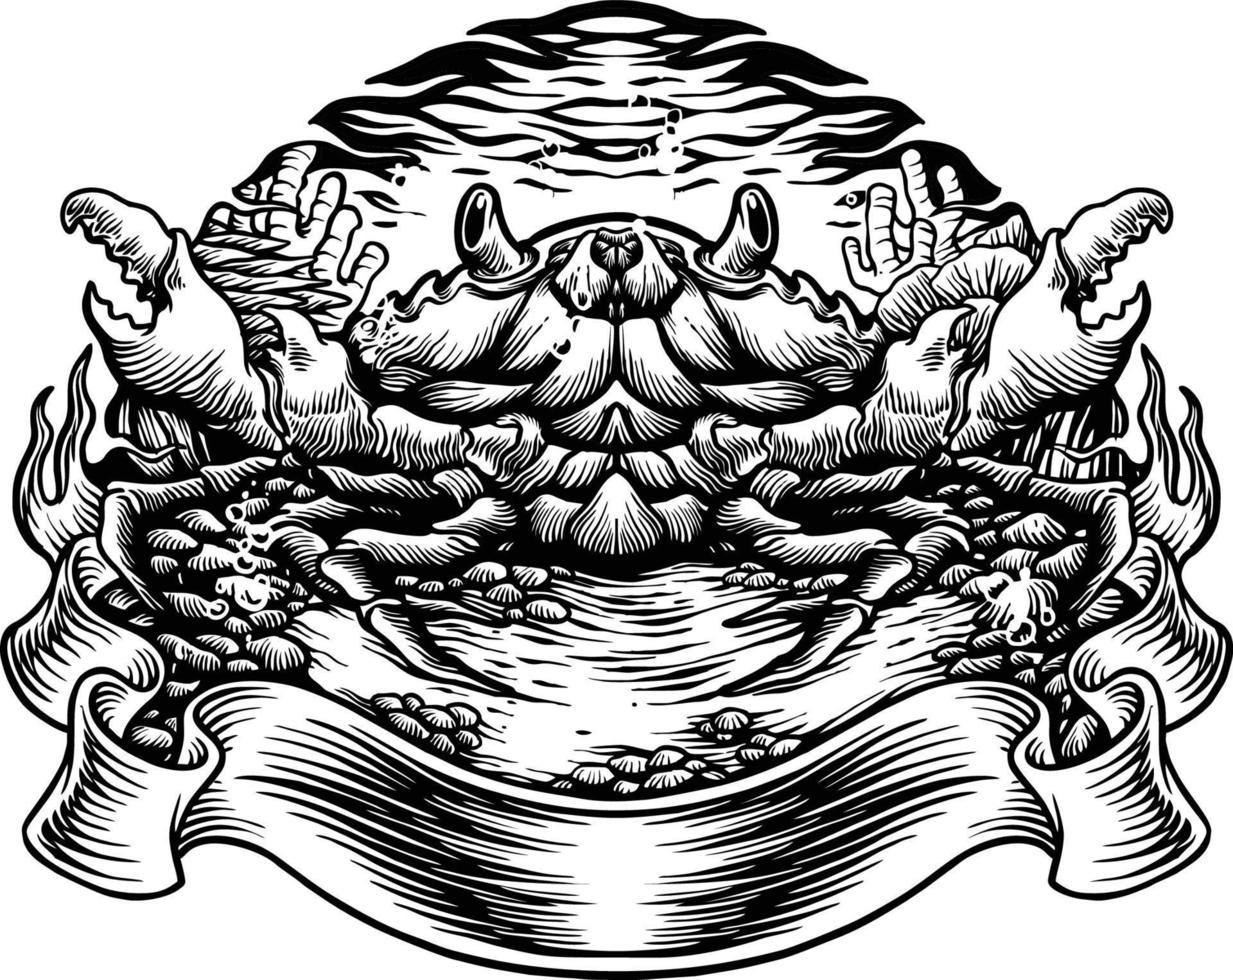 crabe vacances d'été vacances silhouette illustrations vectorielles pour votre logo de travail, t-shirt de marchandise de mascotte, autocollants et conceptions d'étiquettes, affiche, cartes de voeux publicité entreprise ou marques. vecteur